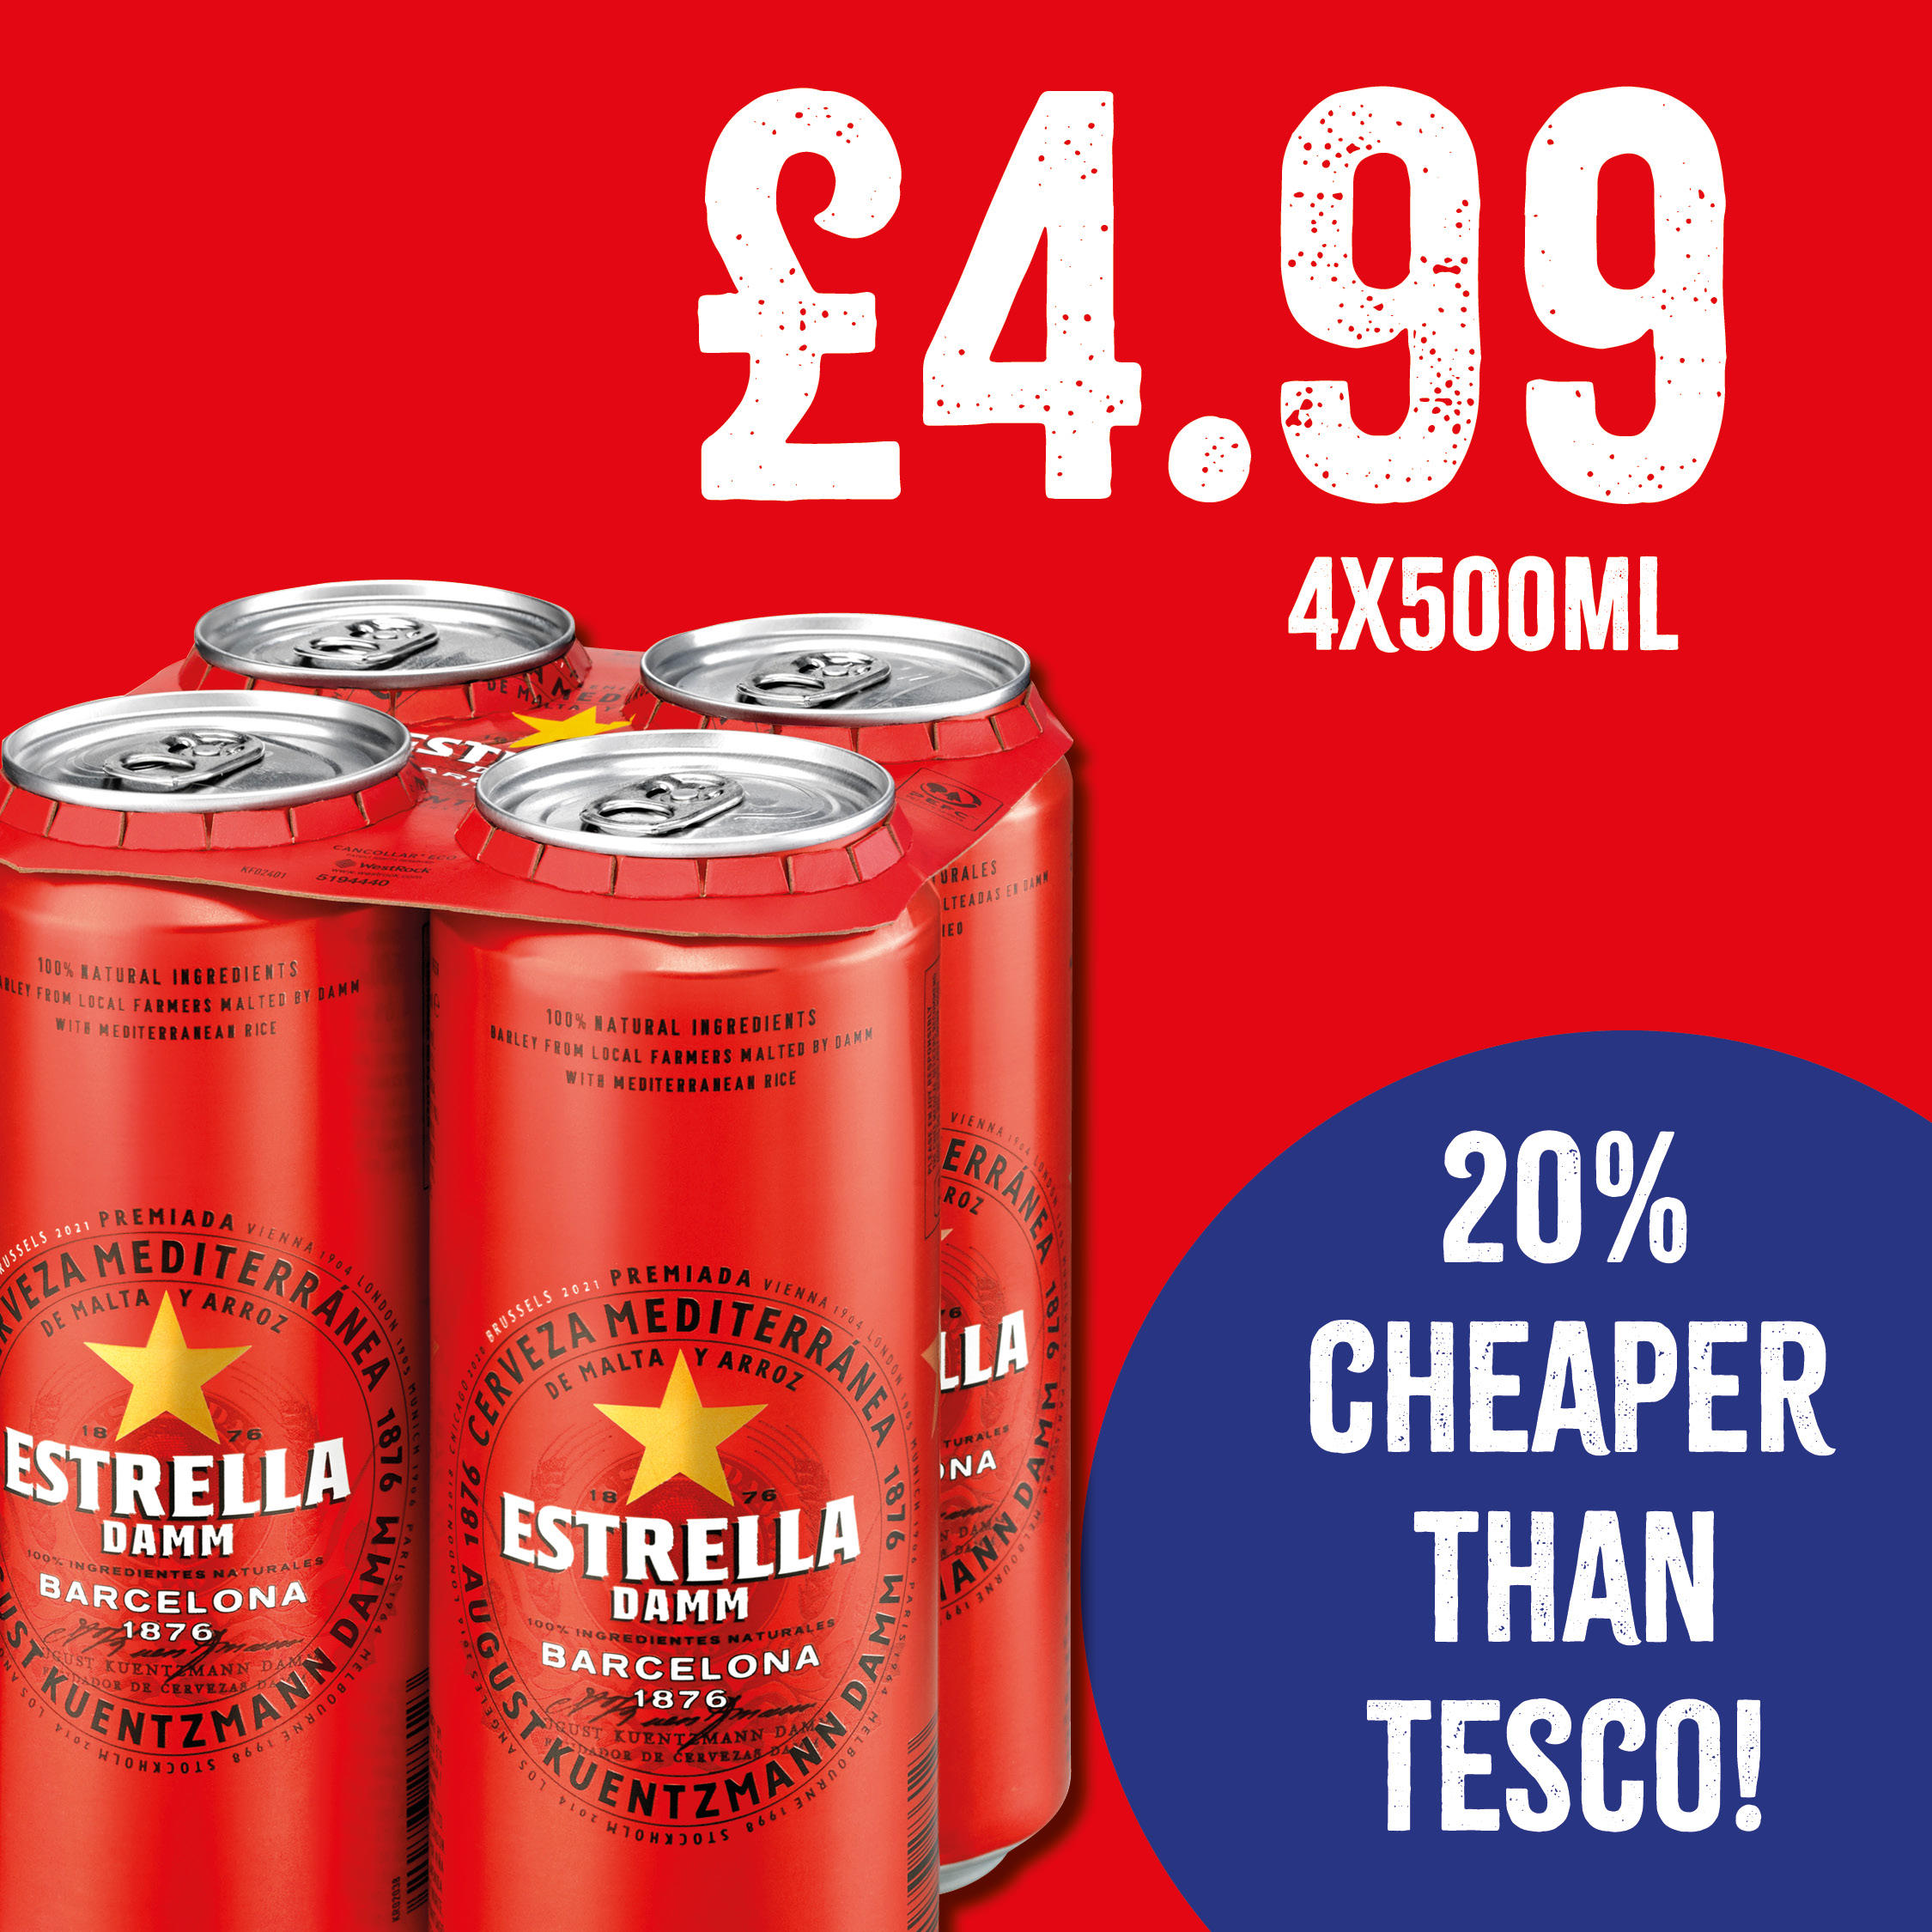 Estrella 4 x 500ml - Only £4.99 
20% Cheaper than Tesco Bargain Booze Plus Weston-Super-Mare 01934 518222